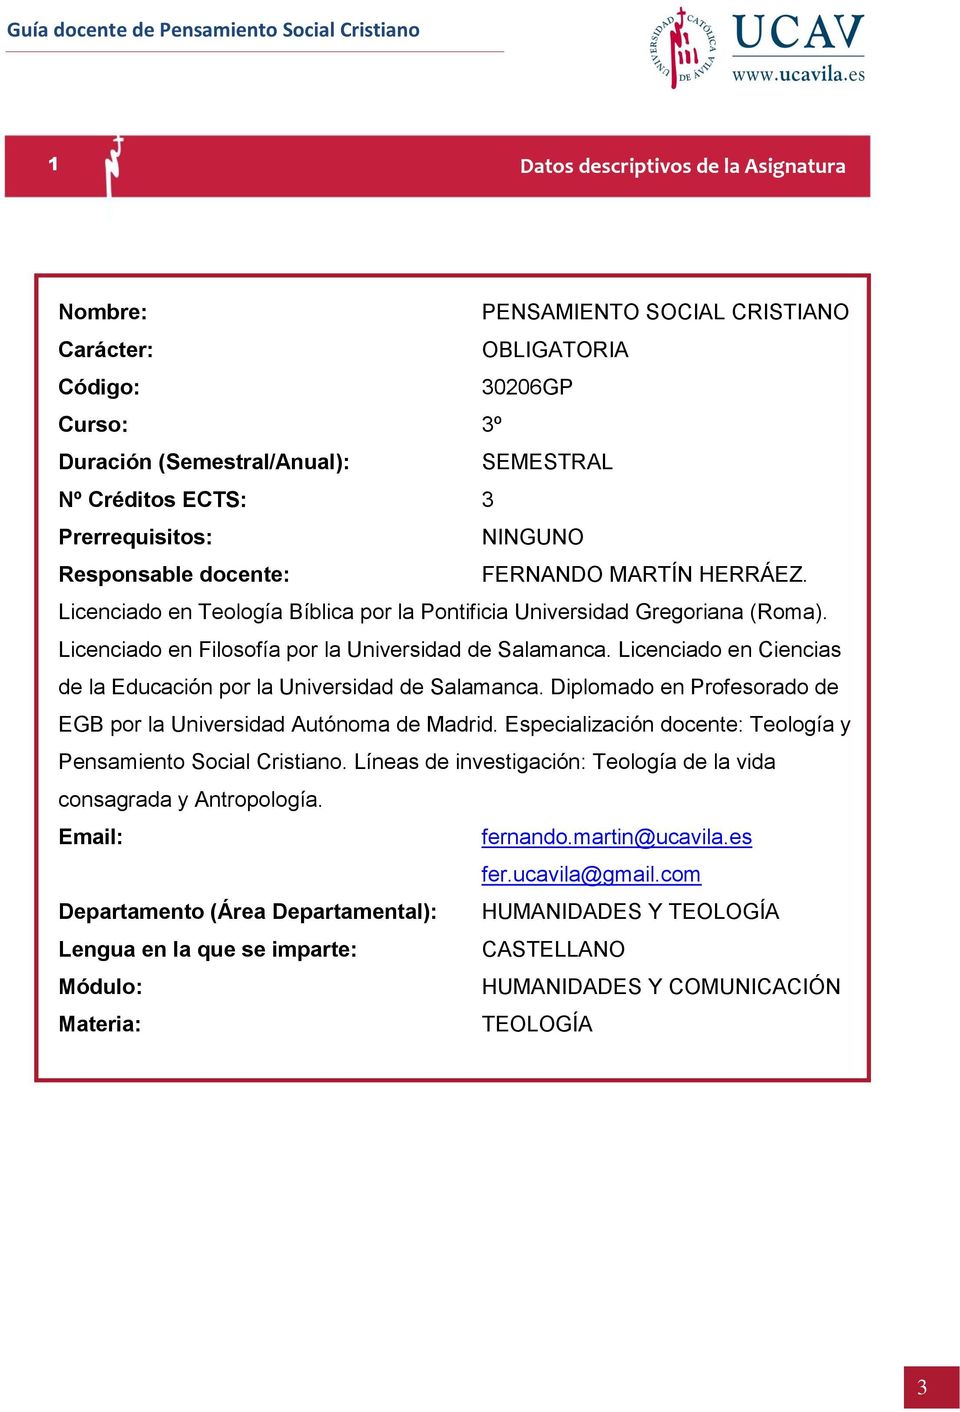 Licenciado en Ciencias de la Educación por la Universidad de Salamanca. Diplomado en Profesorado de EGB por la Universidad Autónoma de Madrid.